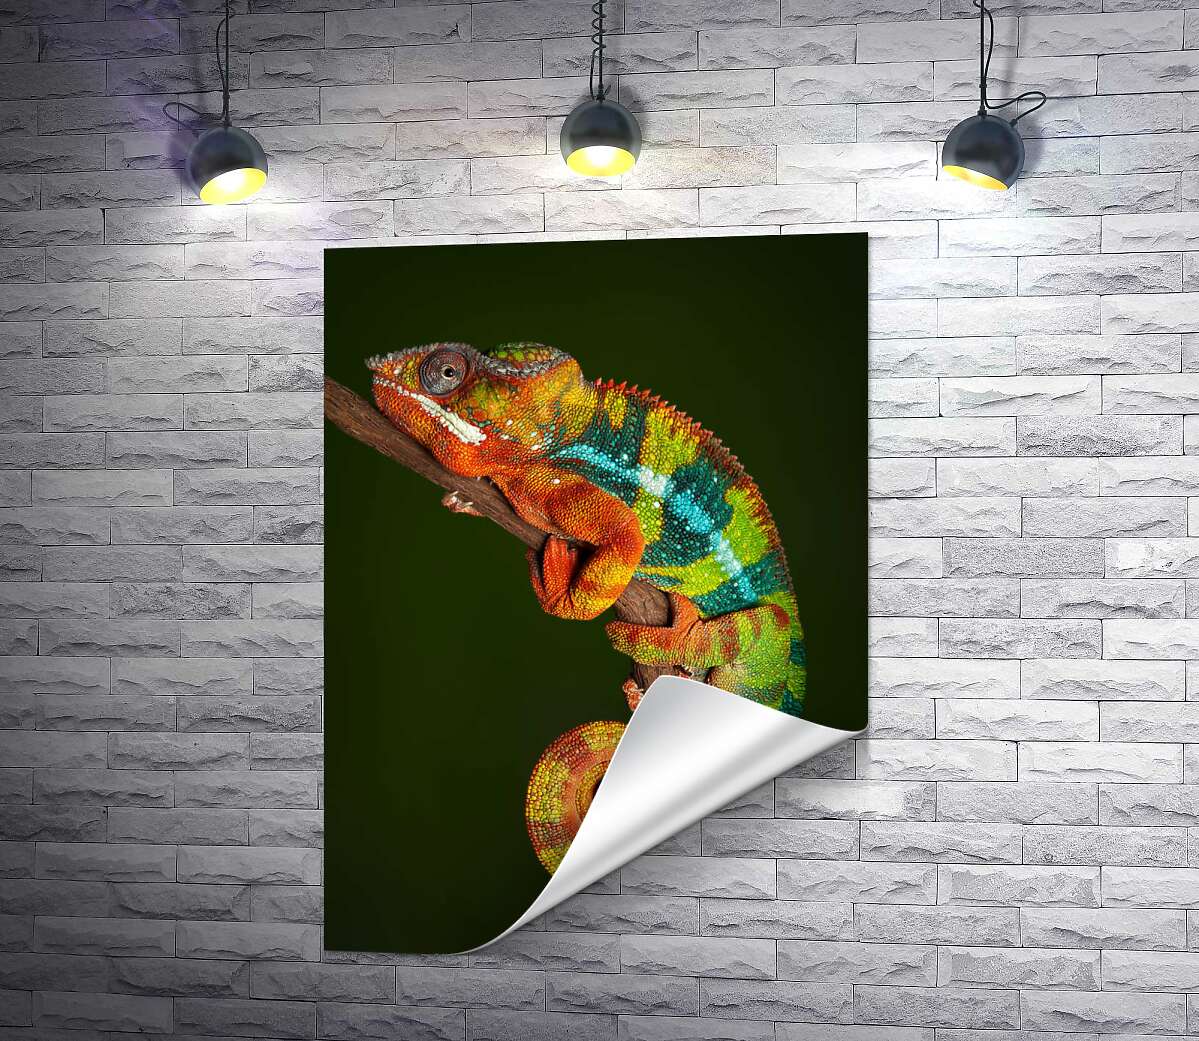 друк Яскравий хамелеон в переливах помаранчево-зелених кольорів